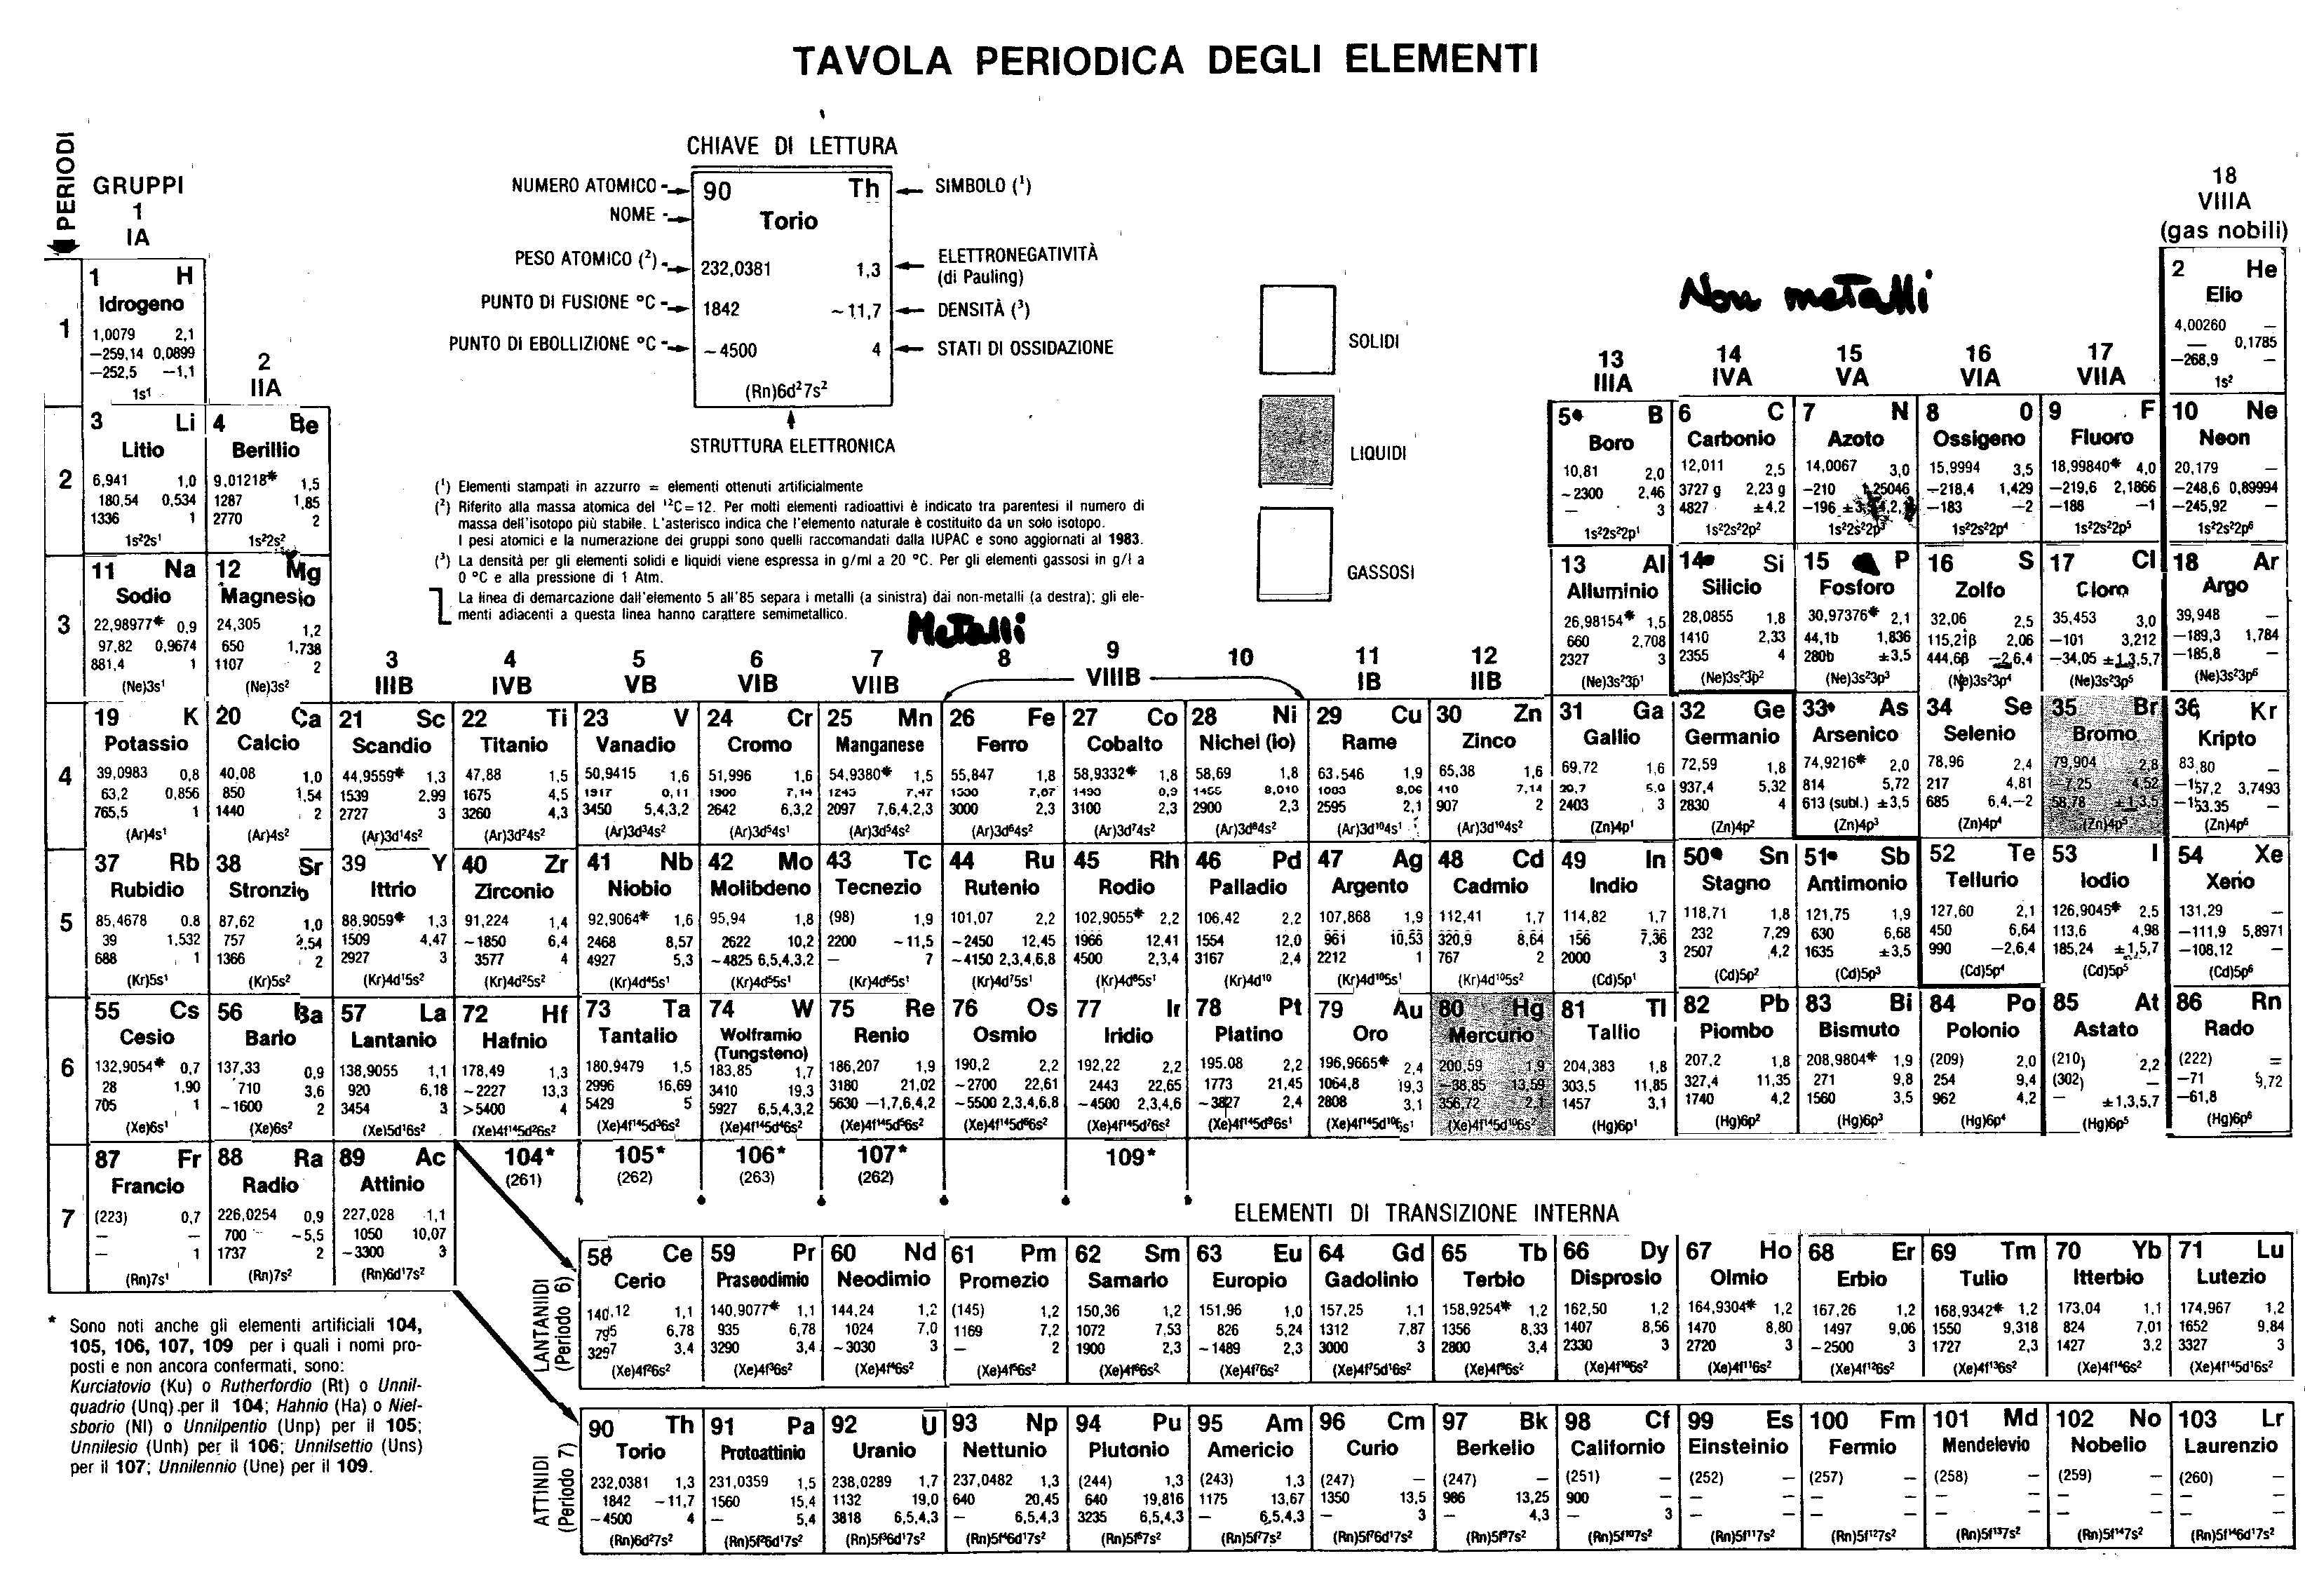 La tavola periodica degli elementi di Mendeleev